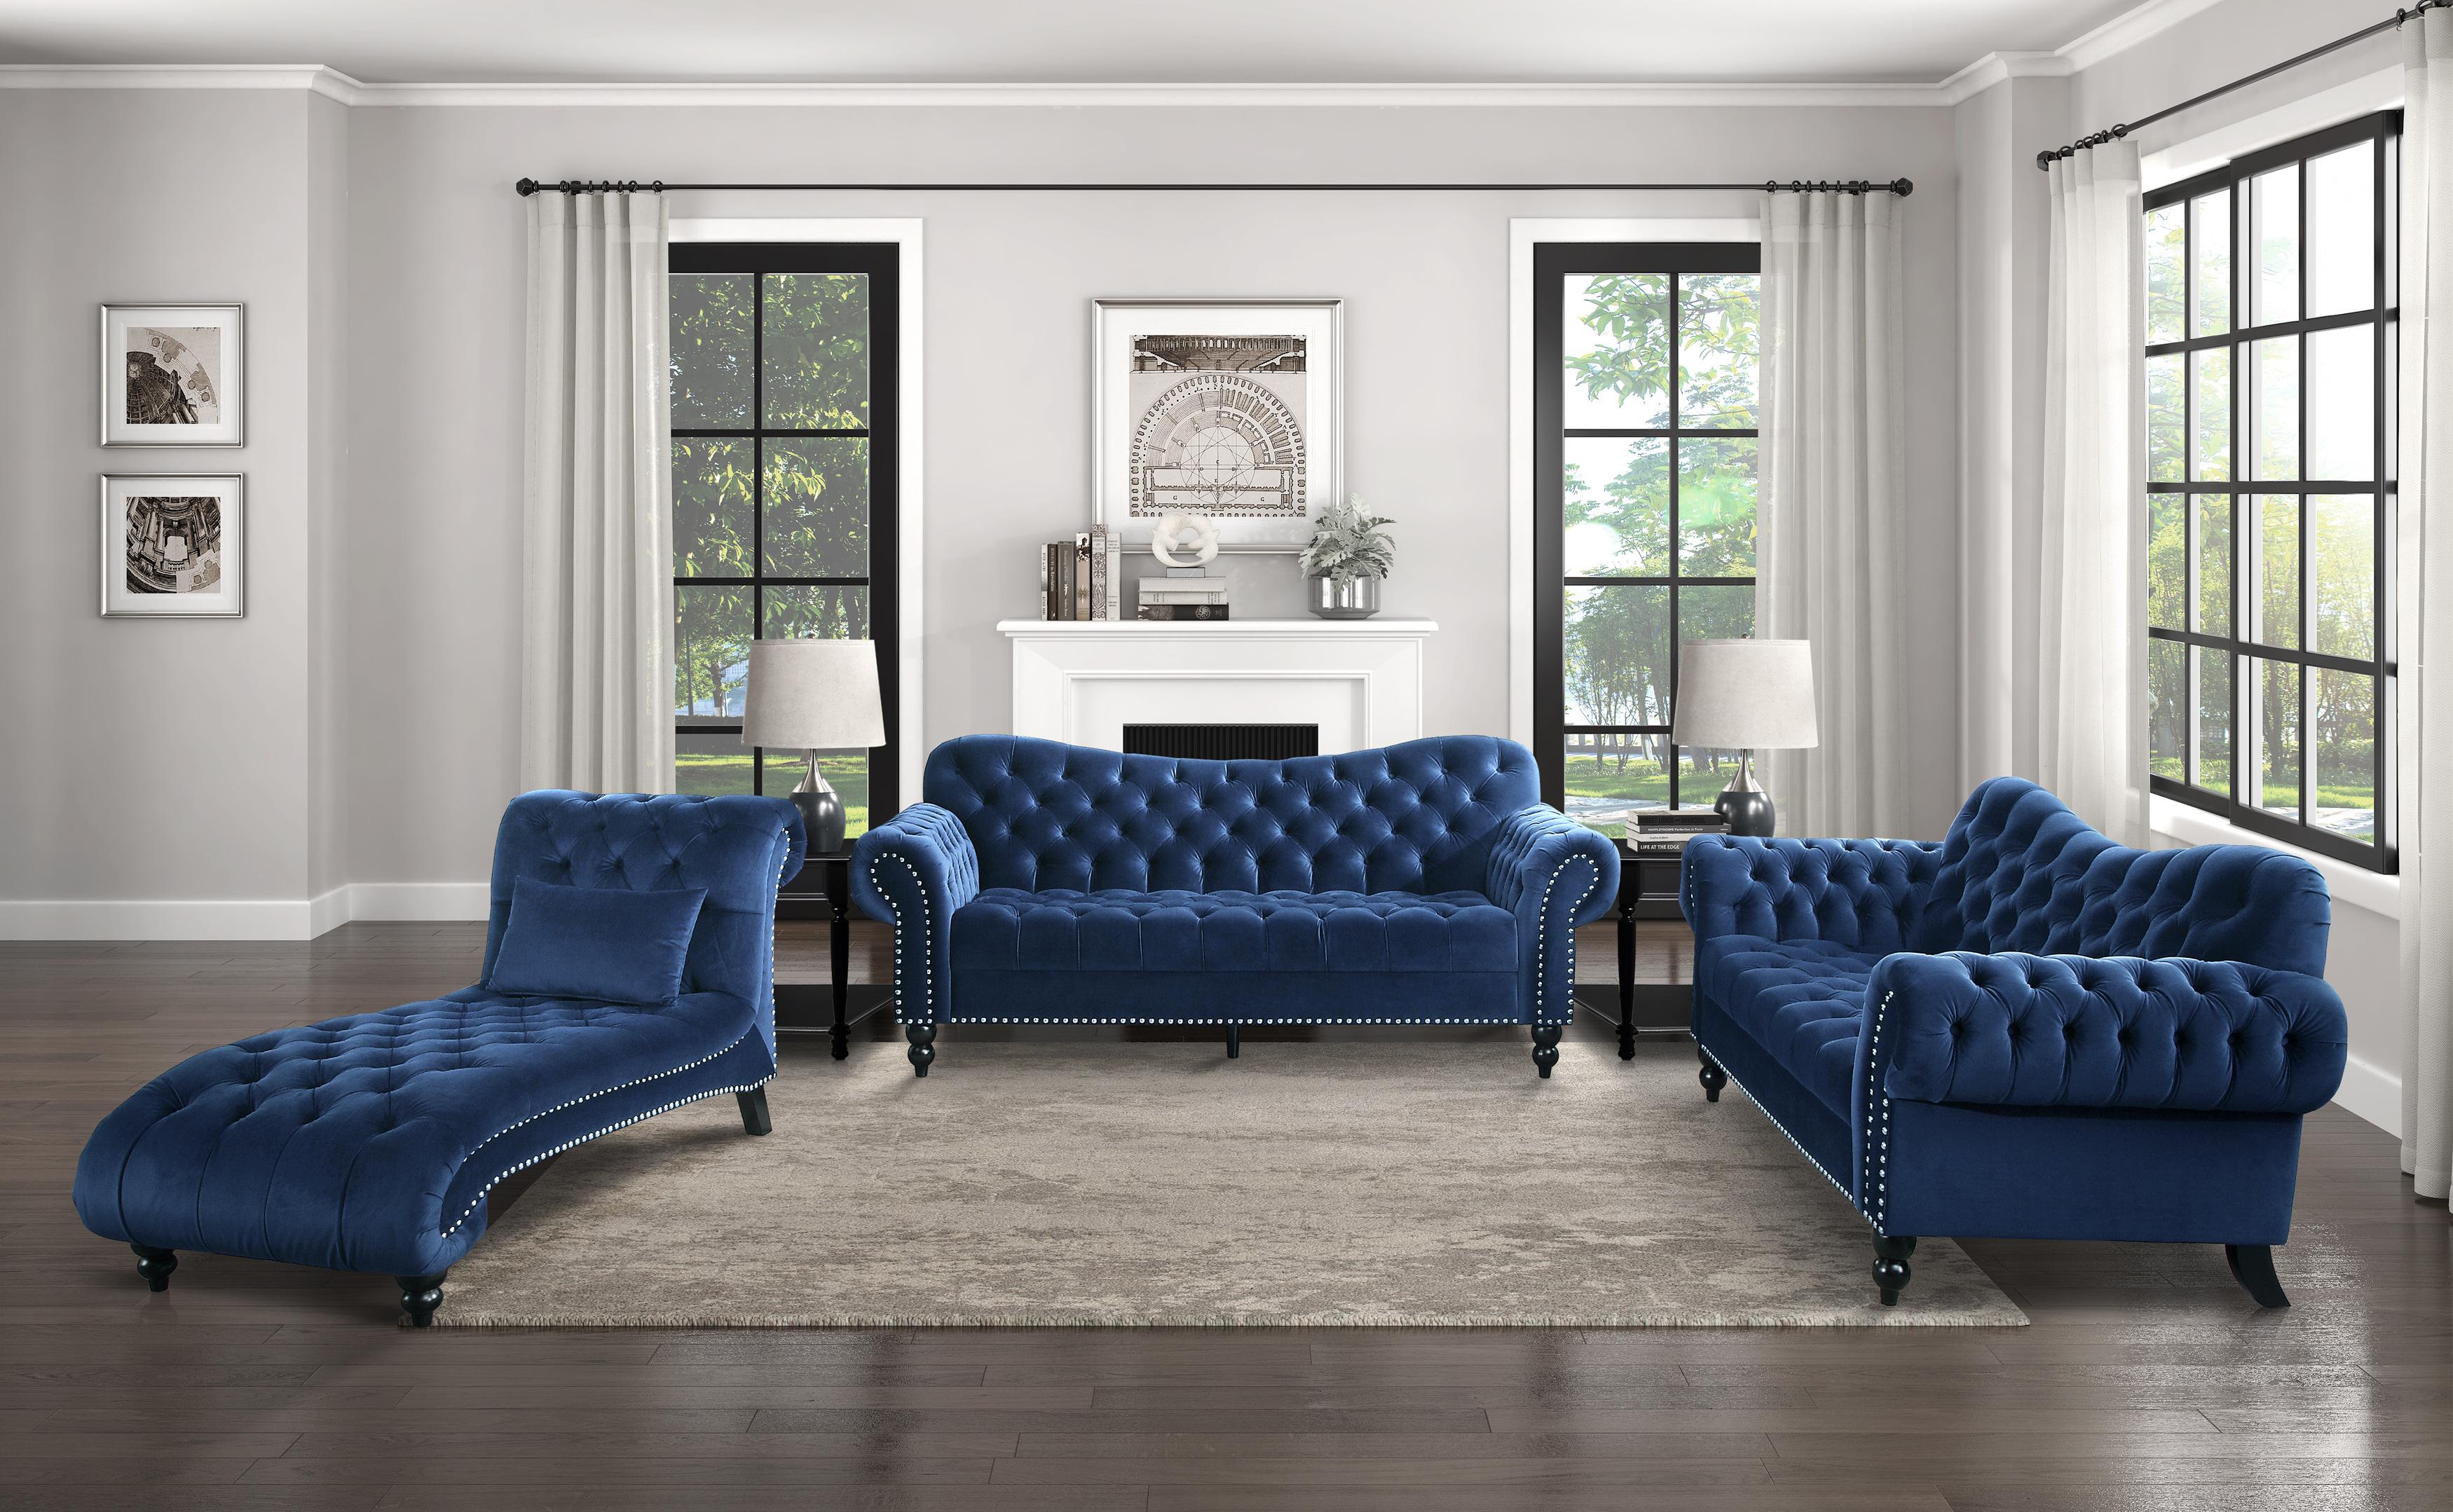 

    
Glam Navy Blue Velvet Living Room Set 3pcs Homelegance 9330BU Rosalie
